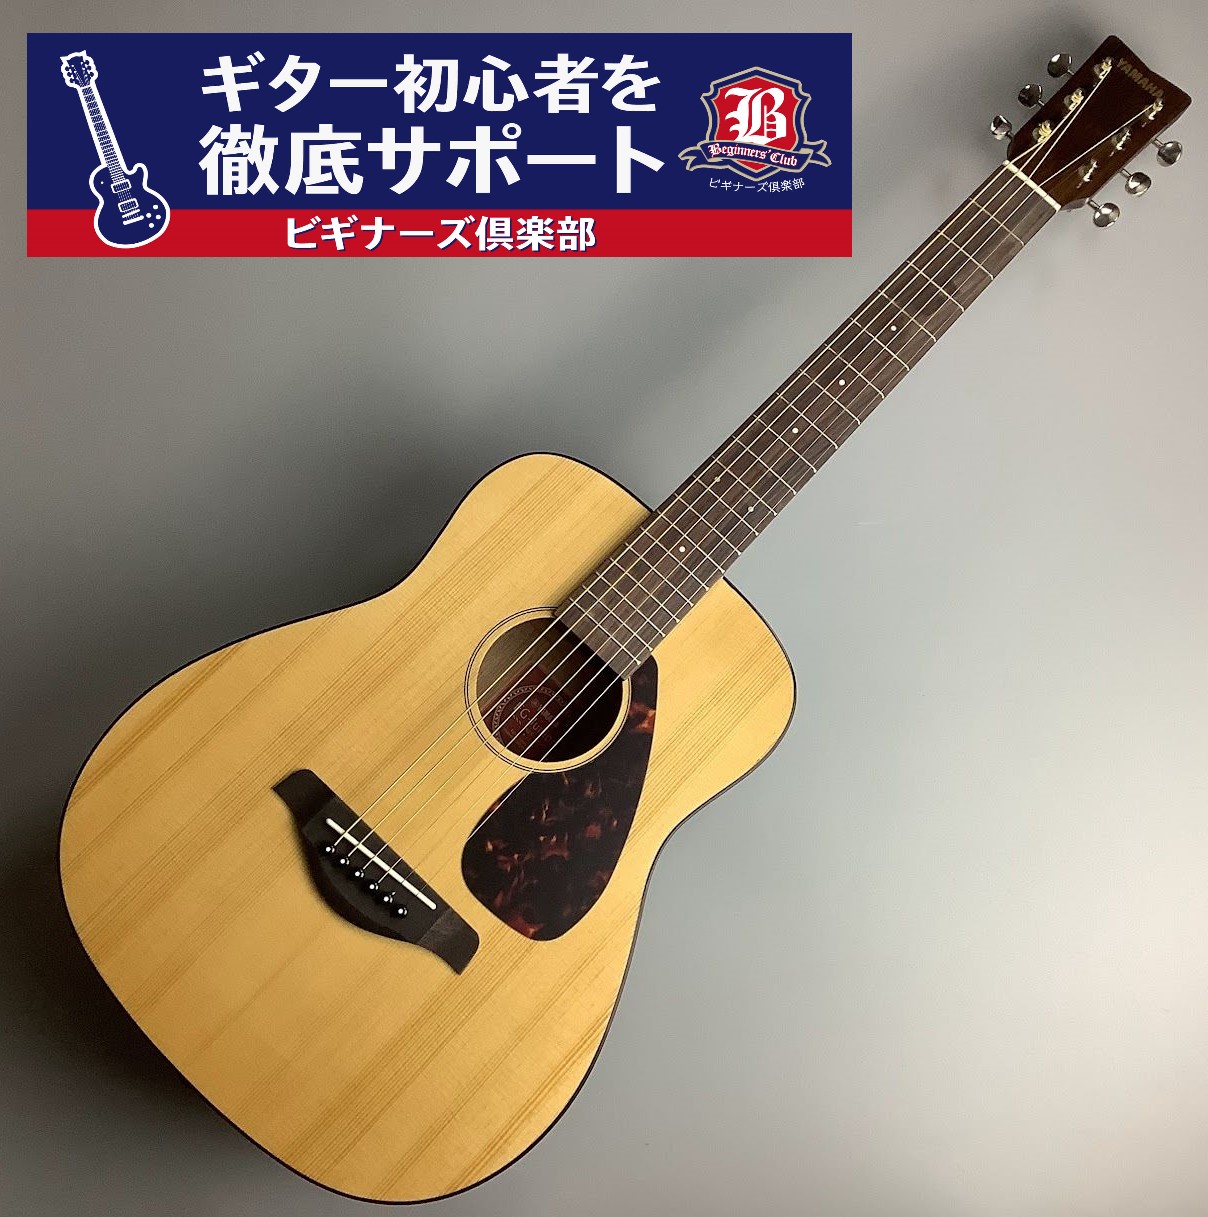 YAMAHA 【無料の初心者向けレッスン1回付き】JR2S ミニギター ...